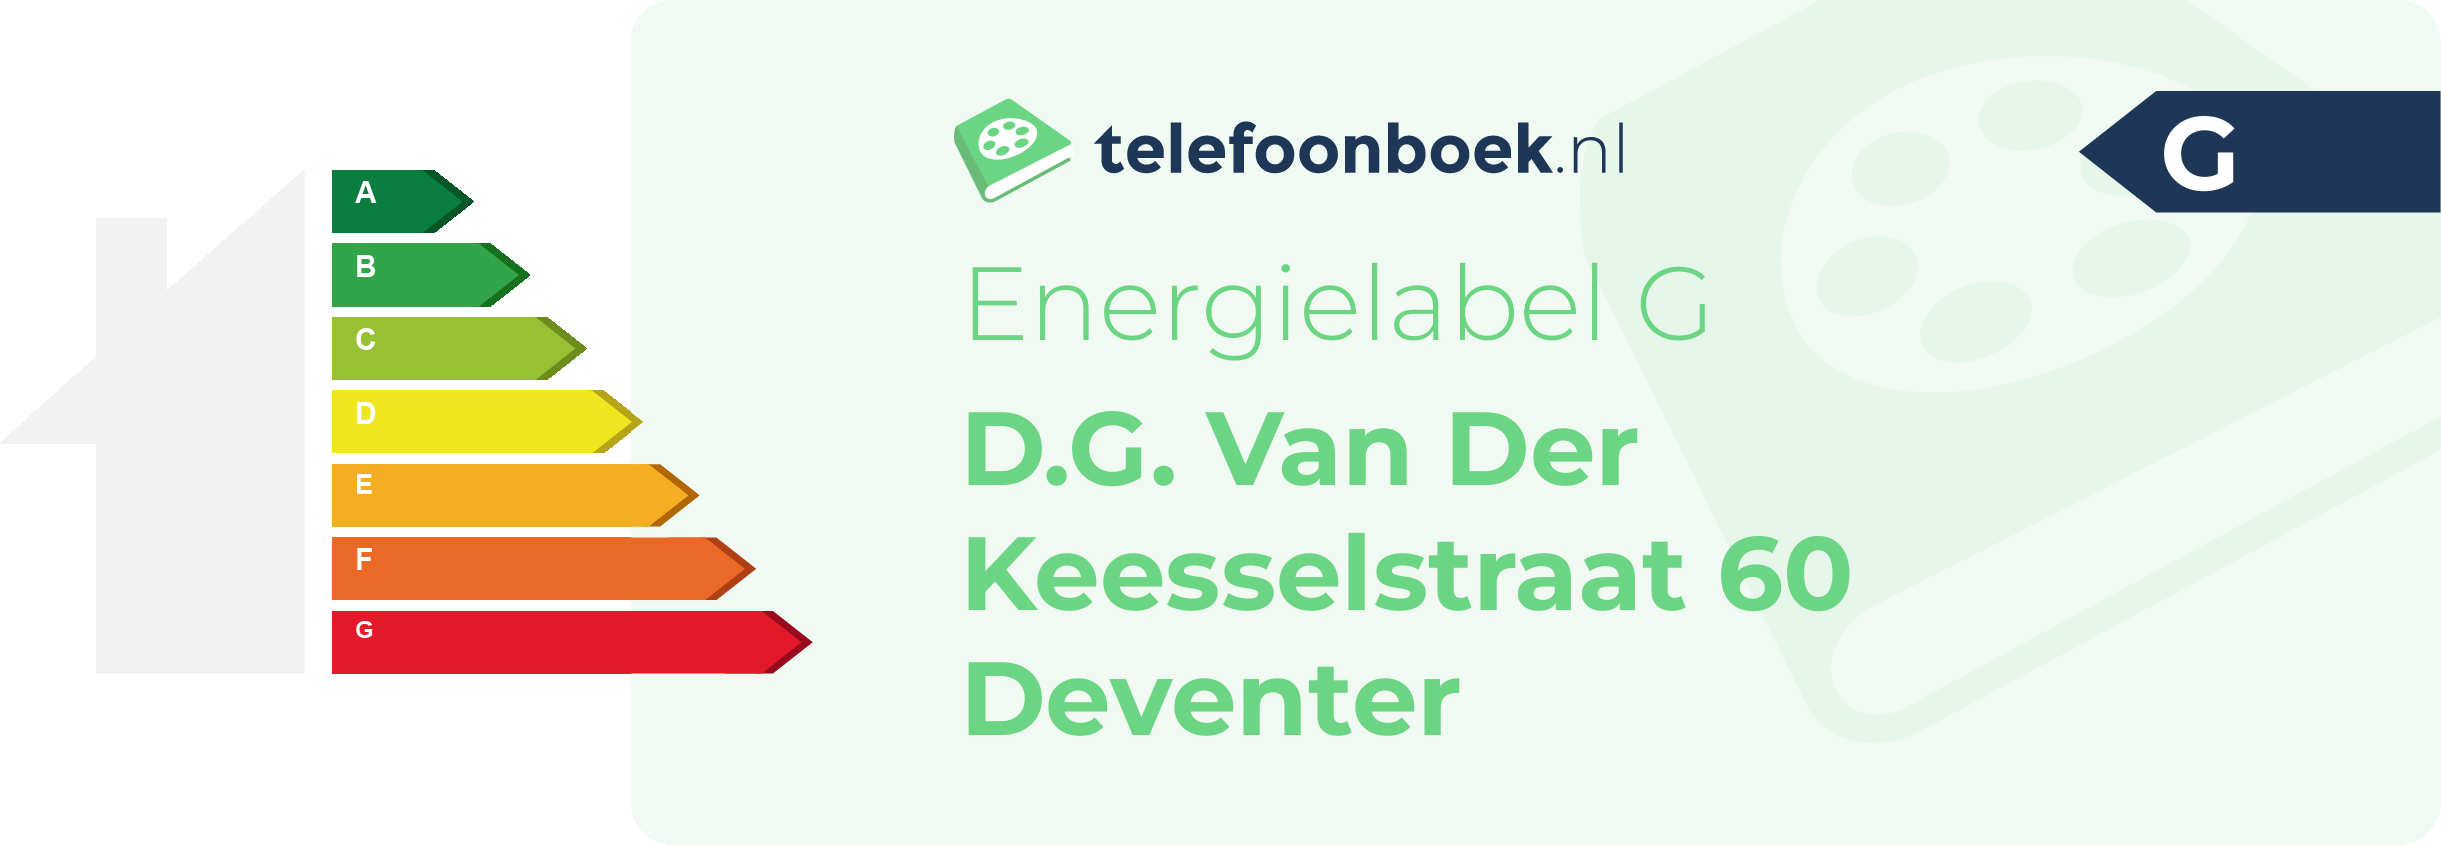 Energielabel D.G. Van Der Keesselstraat 60 Deventer